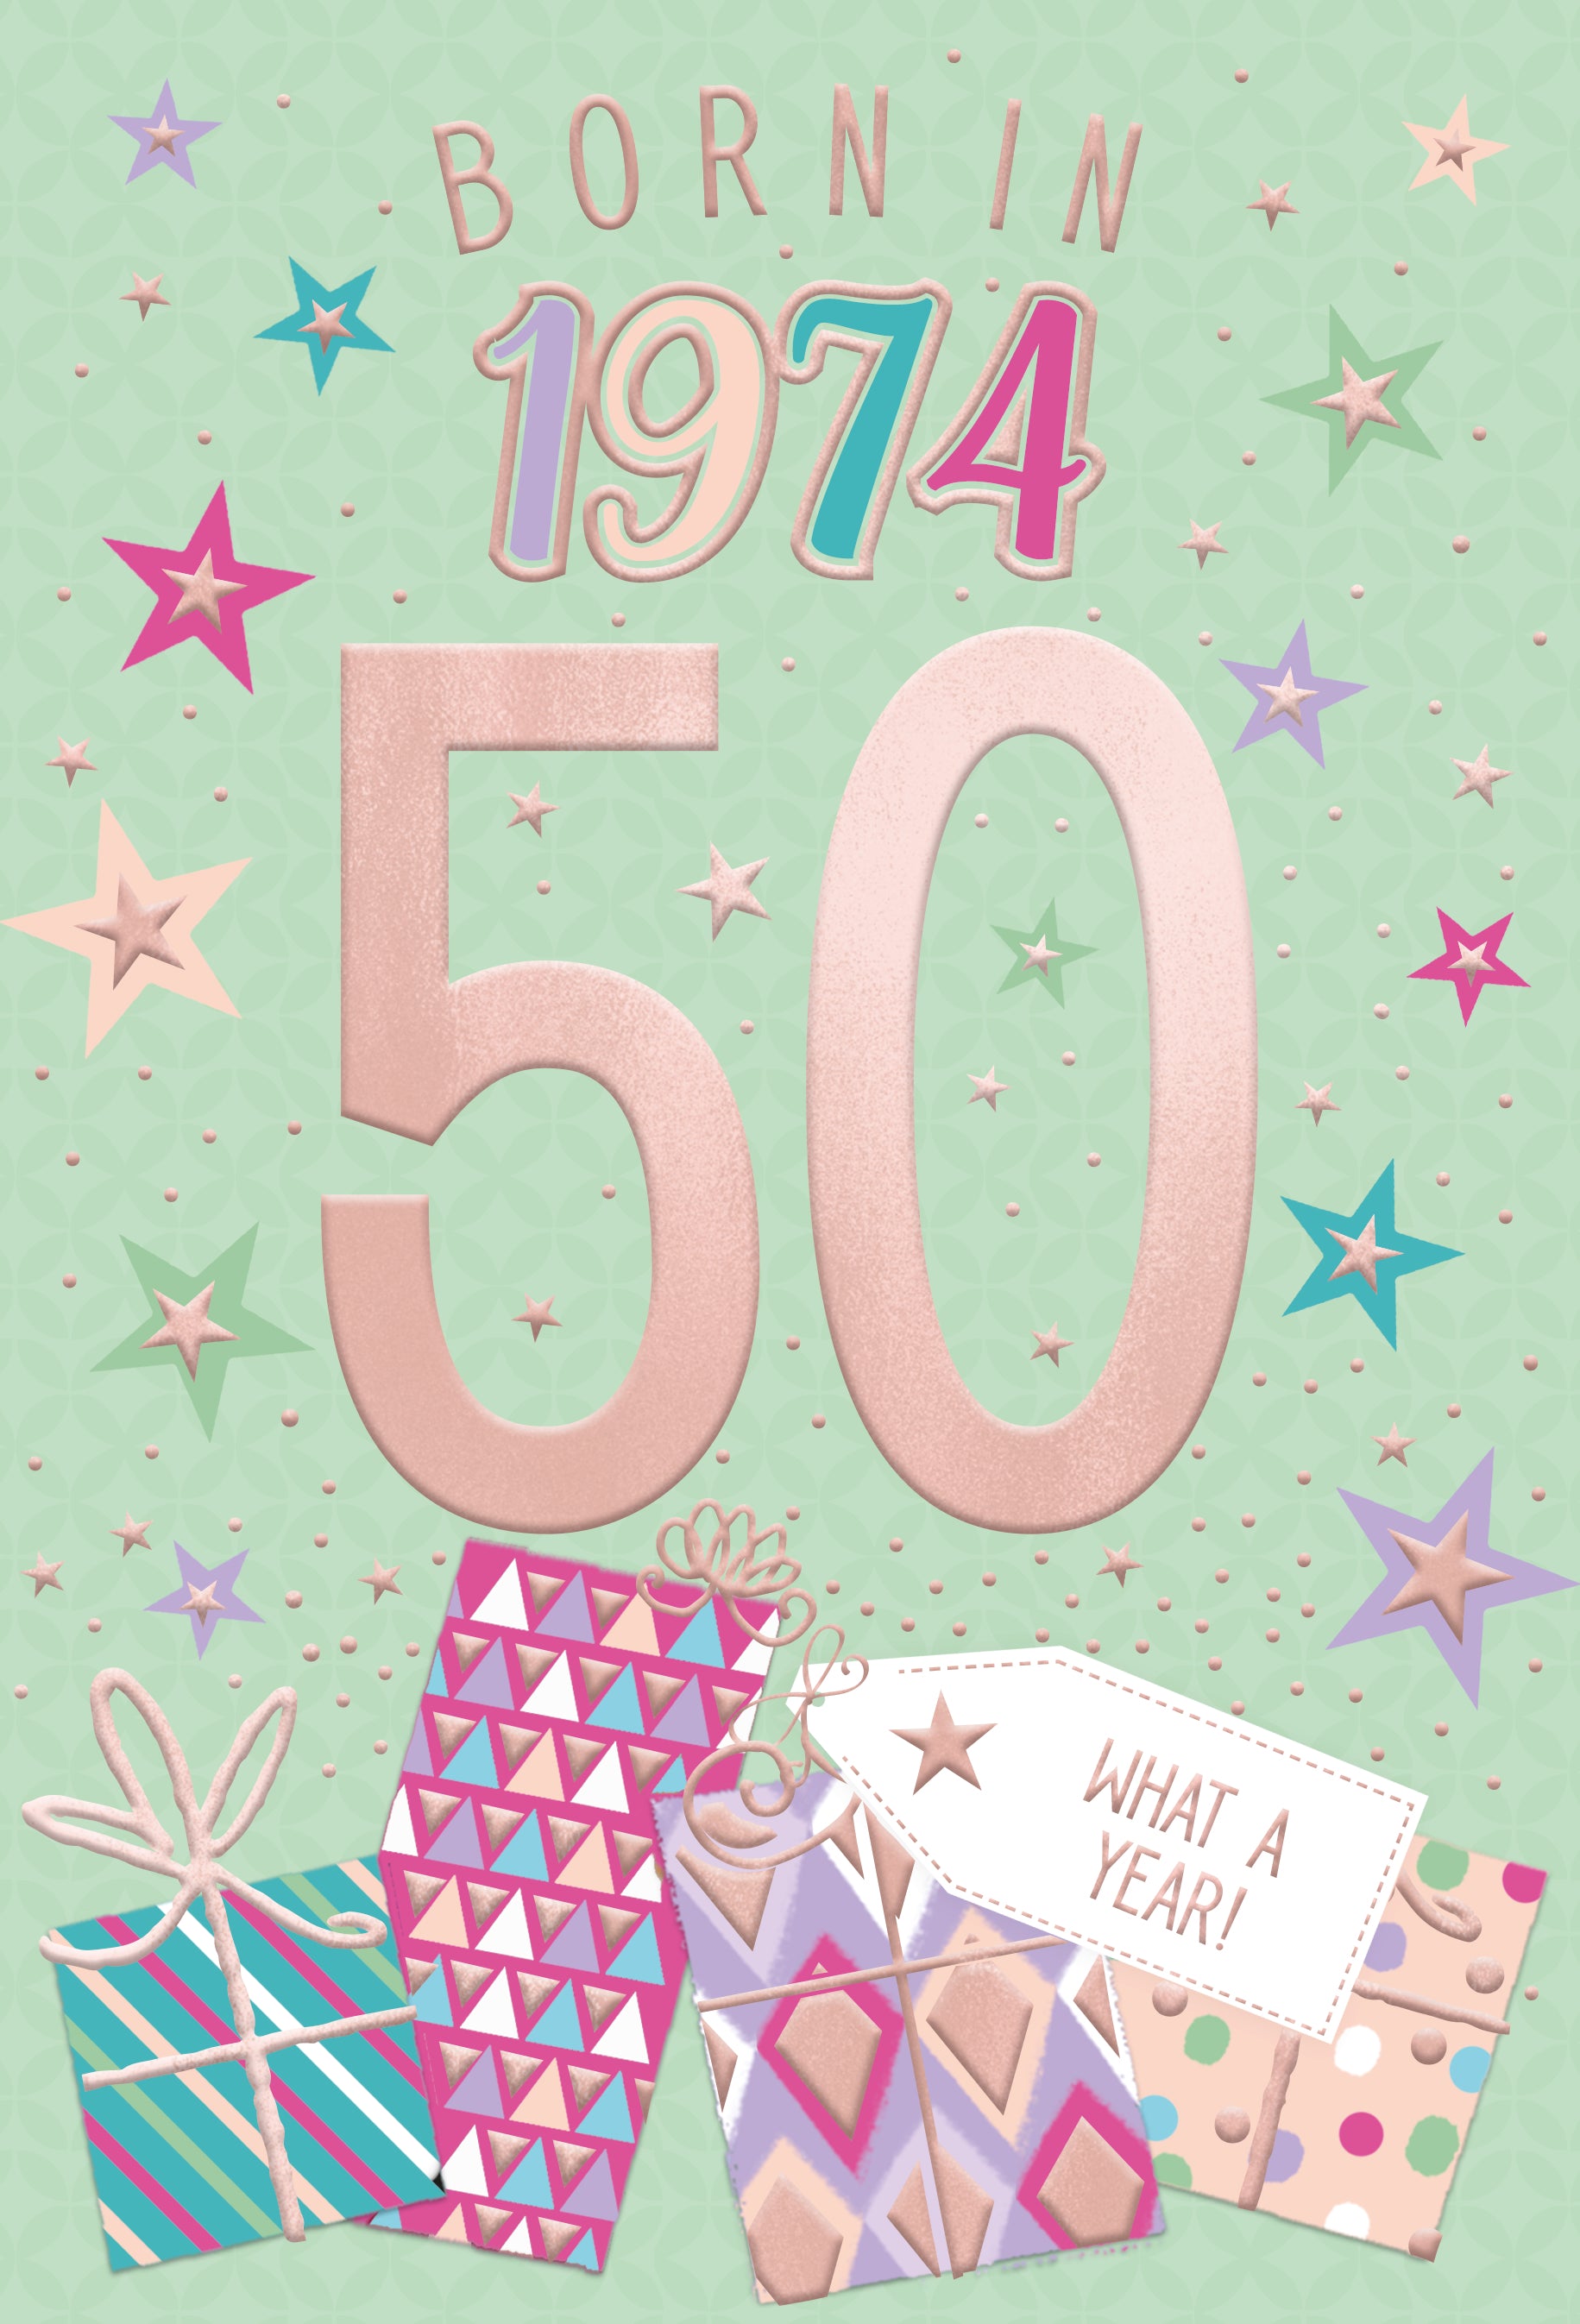 50th birthday card- born in 1974